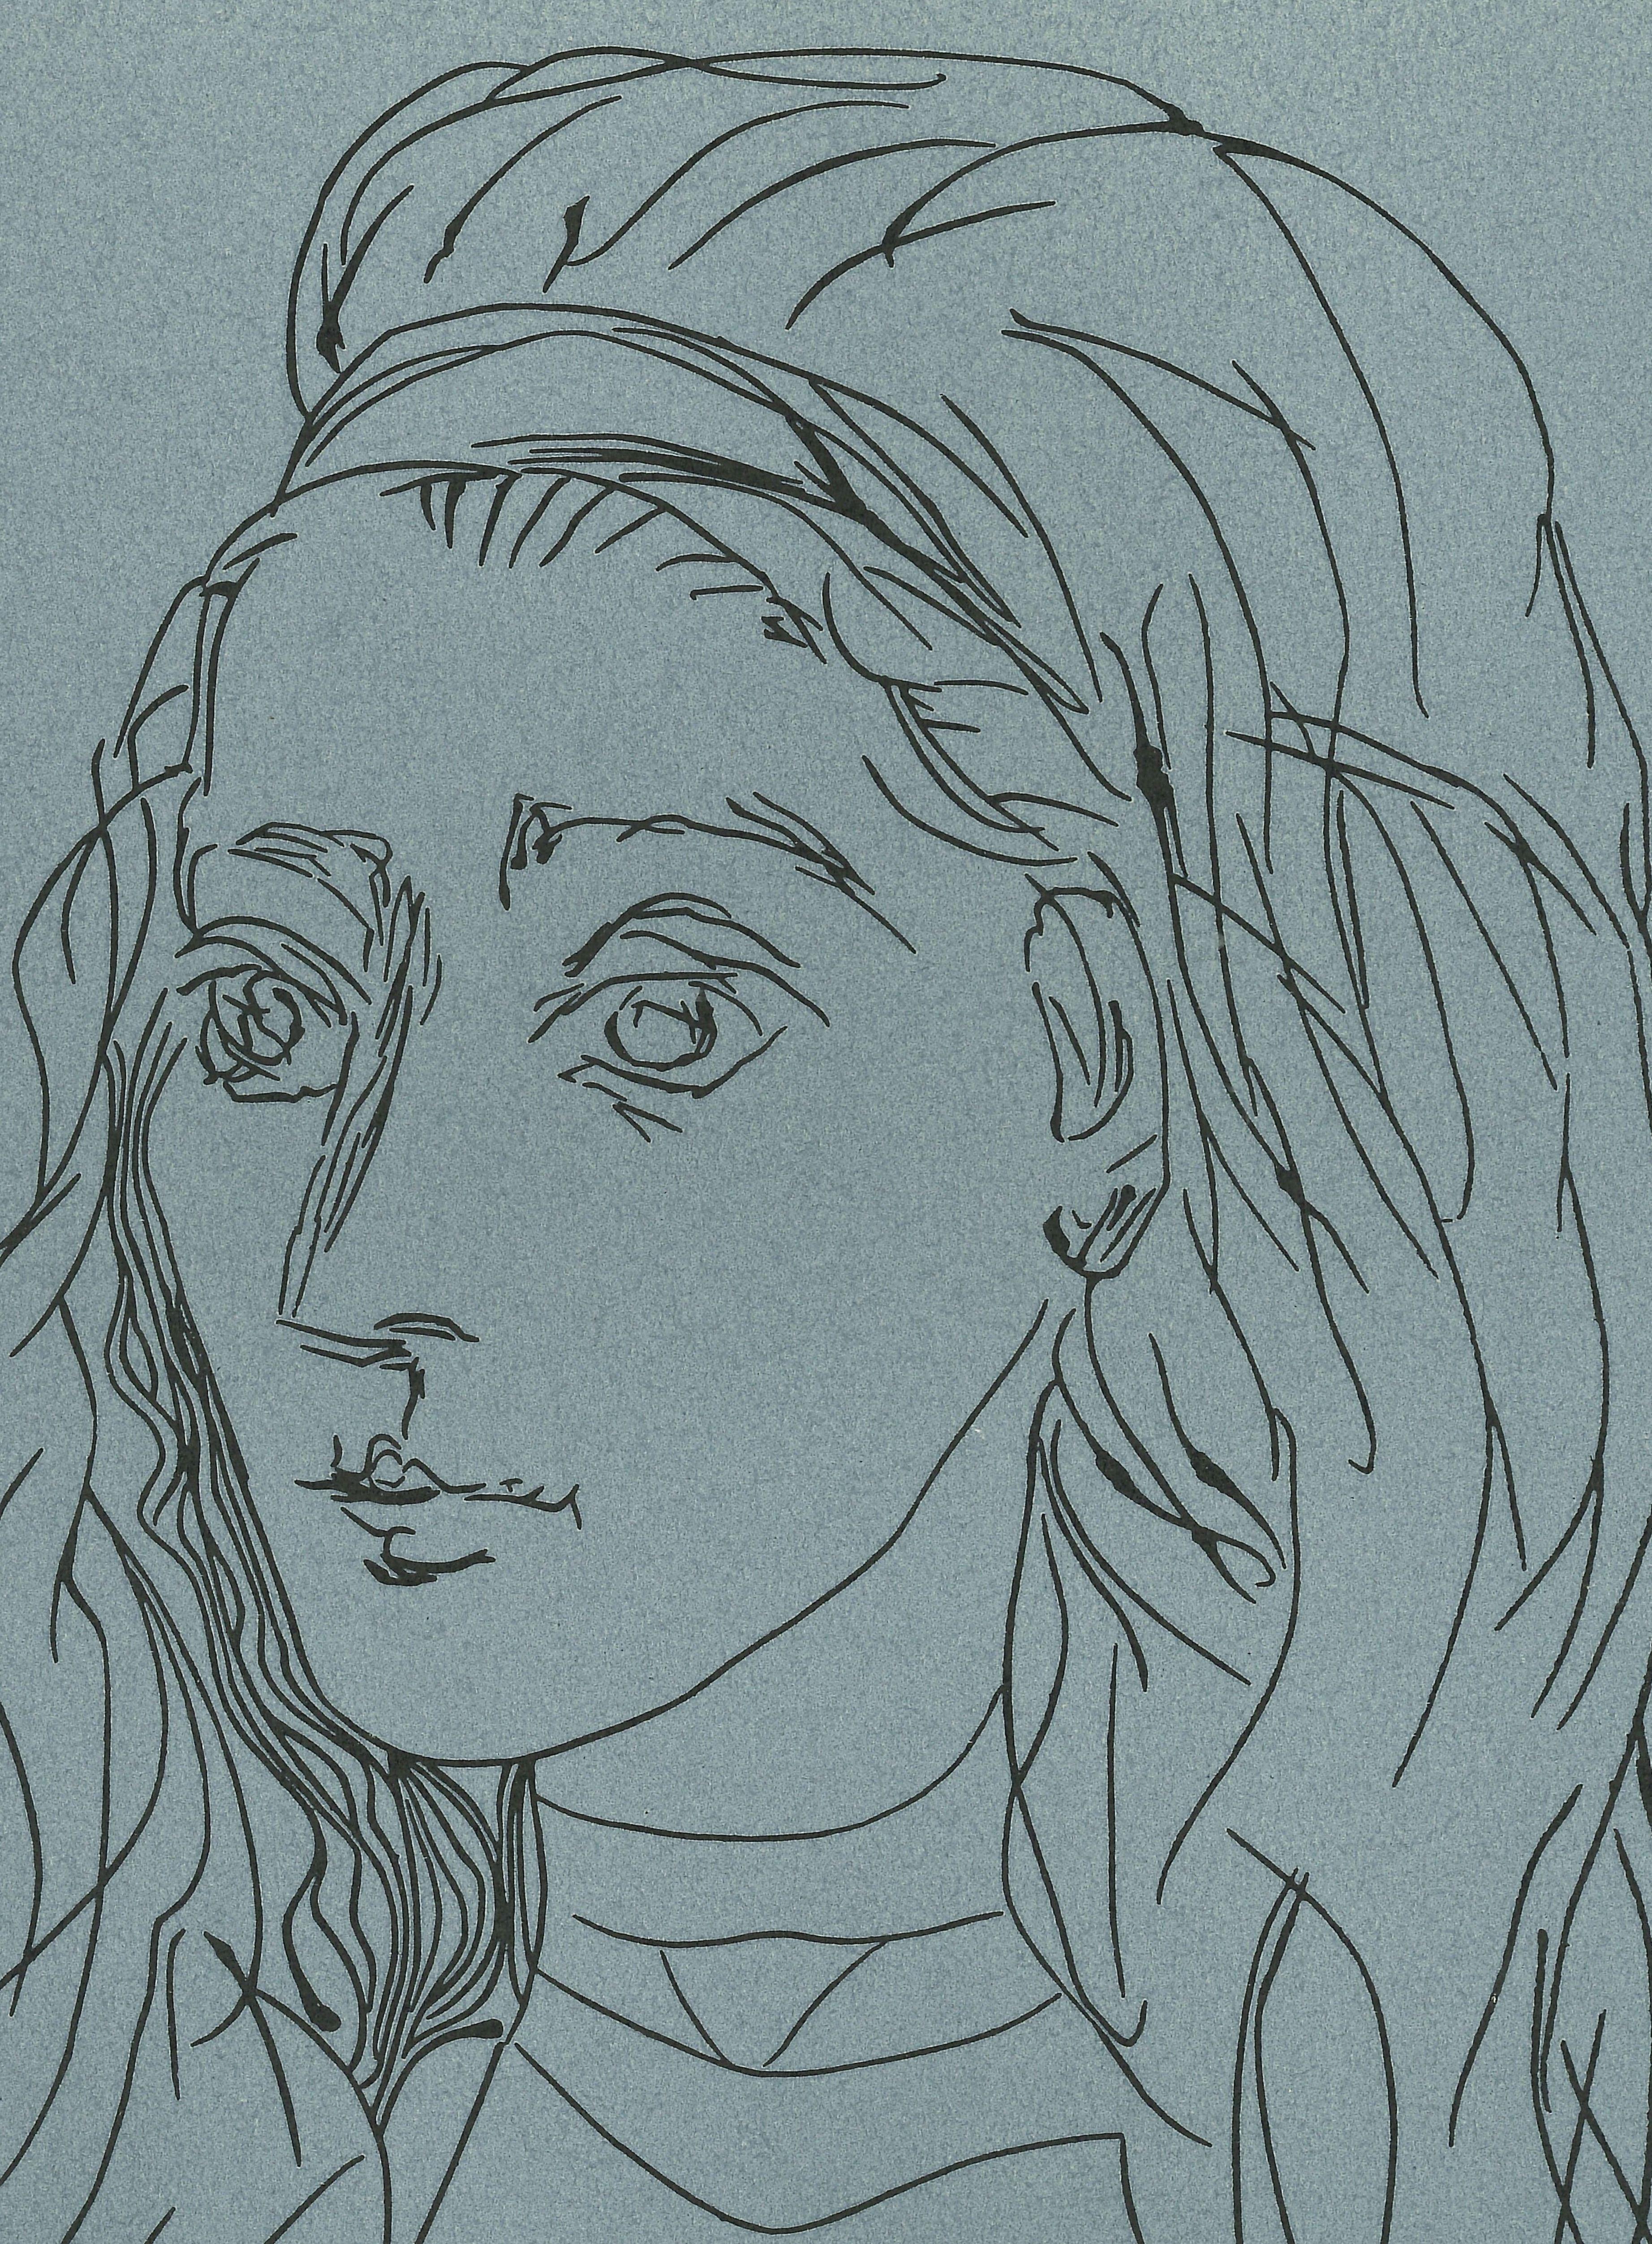 Jacqueline - Reproduction en linogravure d'après Pablo Picasso - 1962 - Print de (after) Pablo Picasso